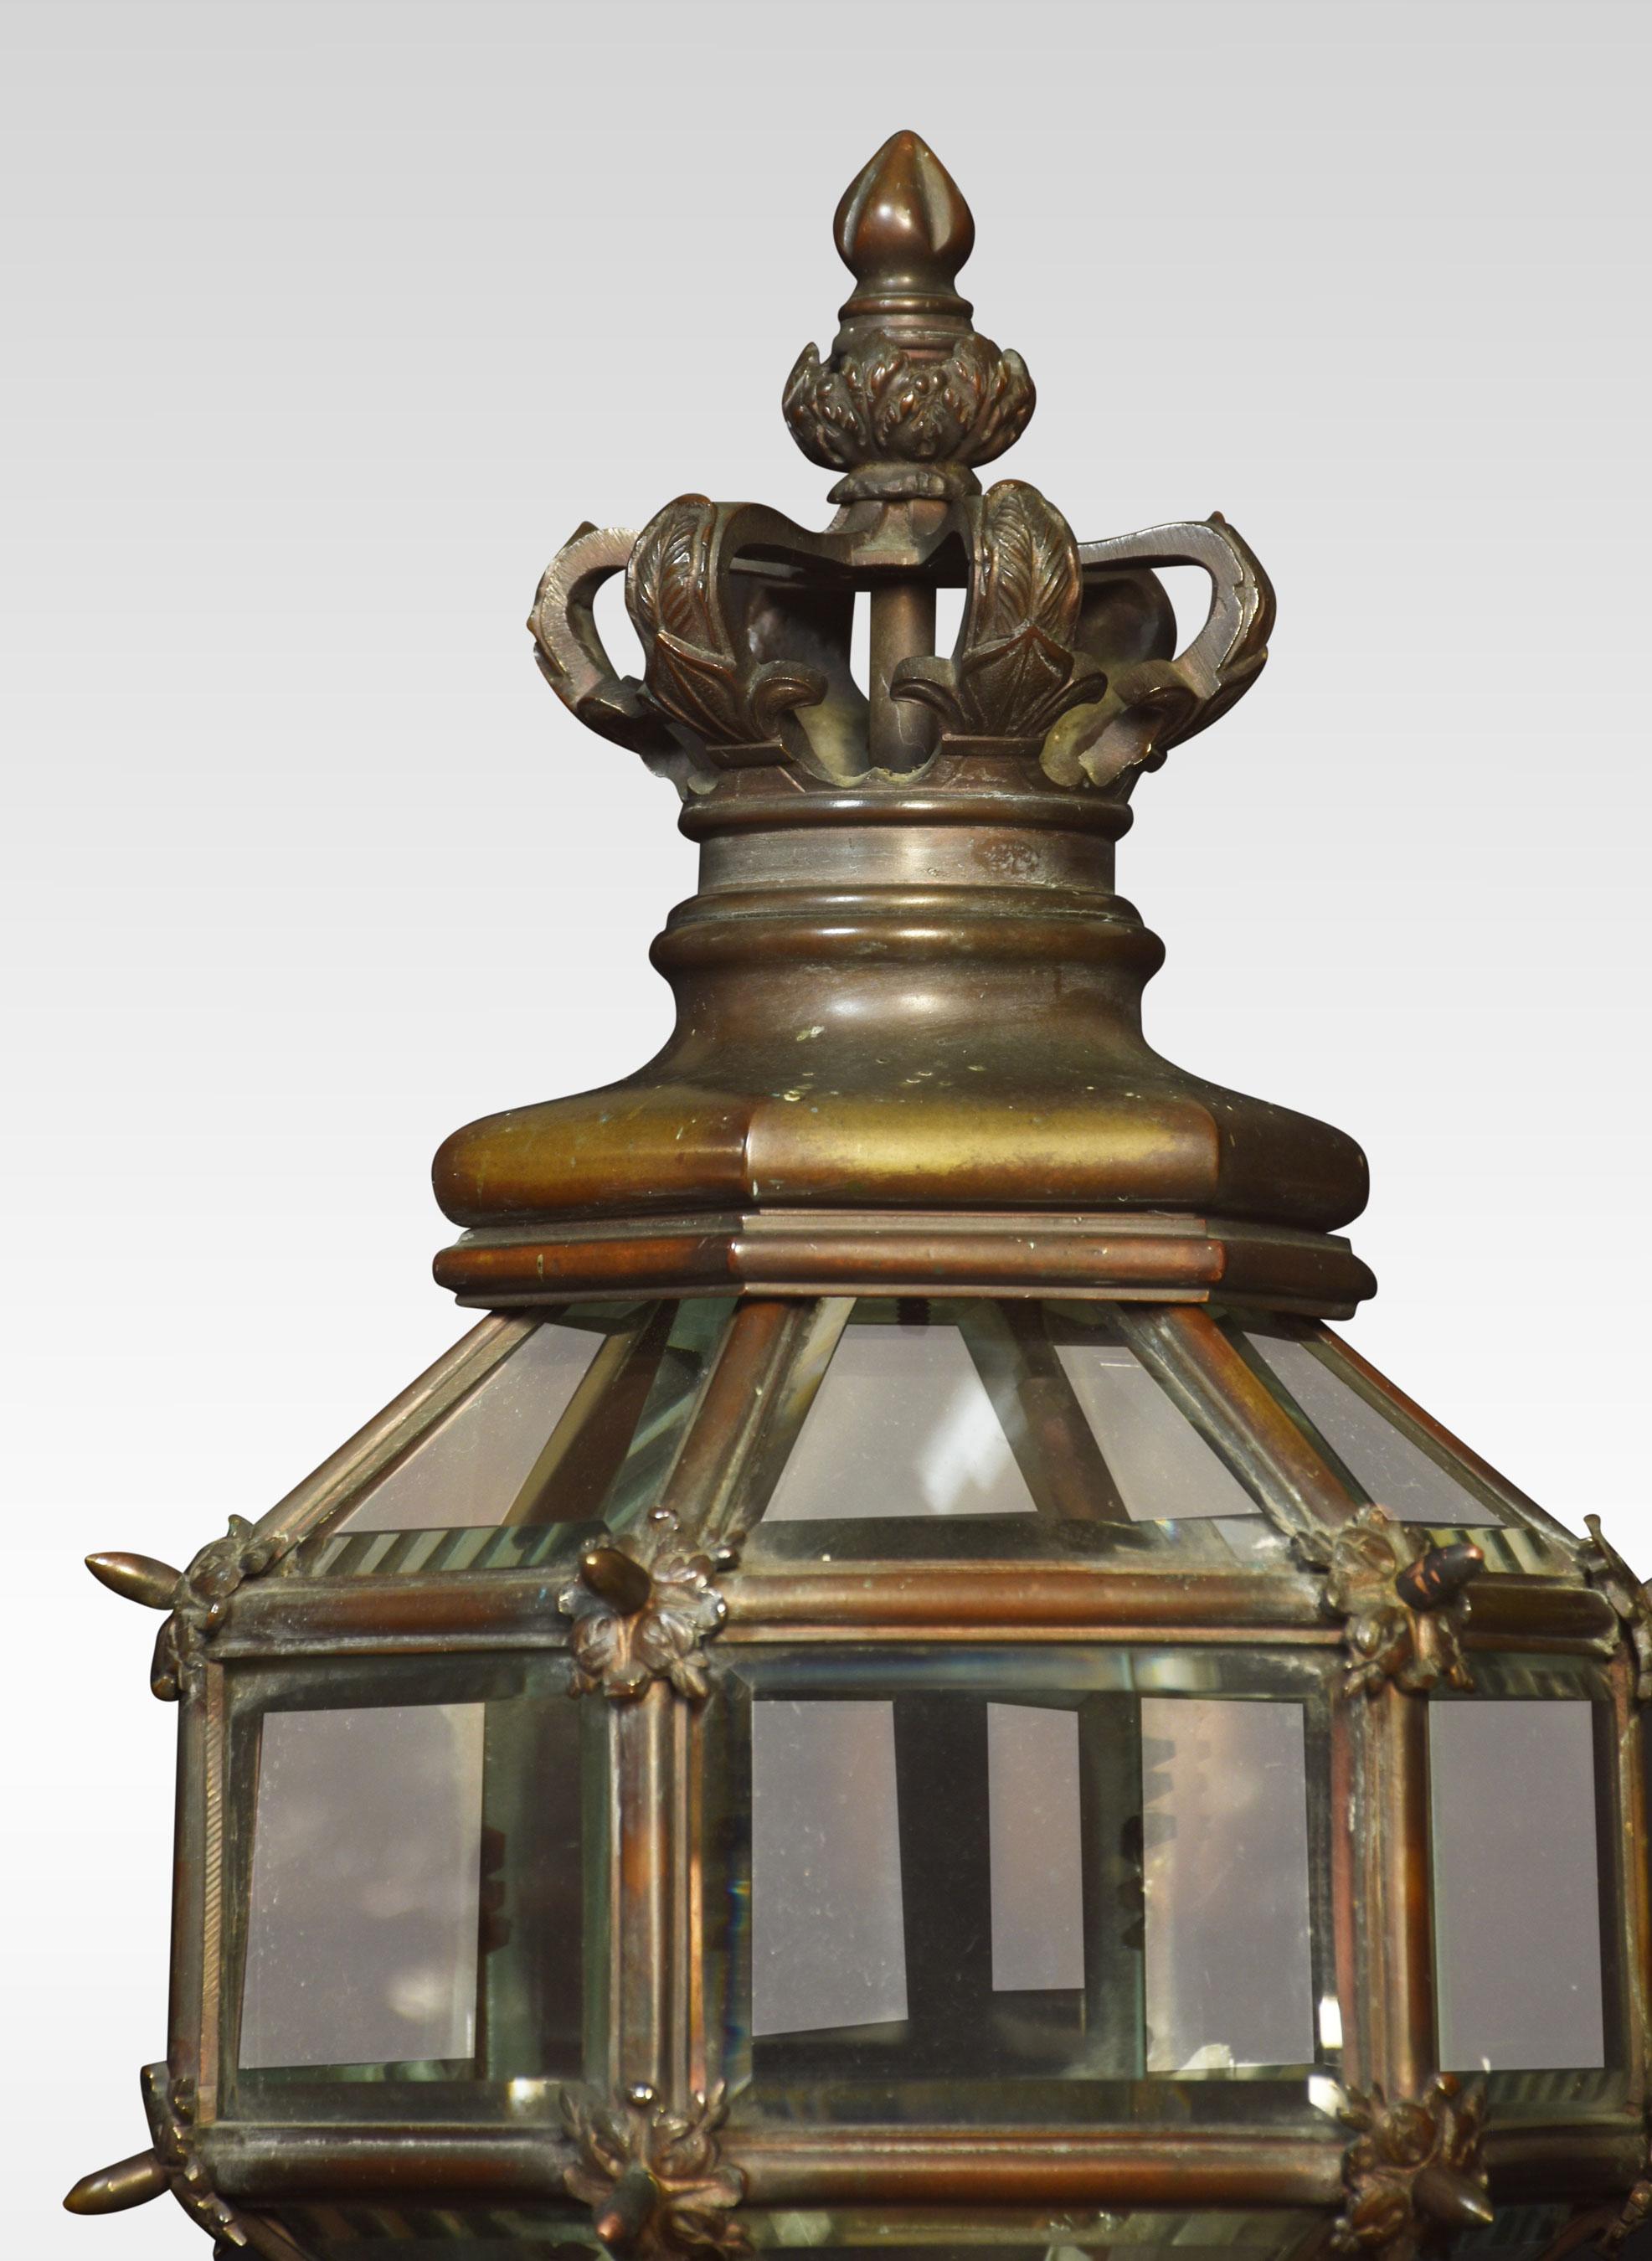 Paire de lampes de poteau de Newel en bronze, les sommets en forme de couronne au-dessus d'une lanterne hexagonale vitrée reposant sur une tige cannelée et des bases circulaires. Les lampes ont été recâblées.
Dimensions
hauteur 37 pouces
largeur